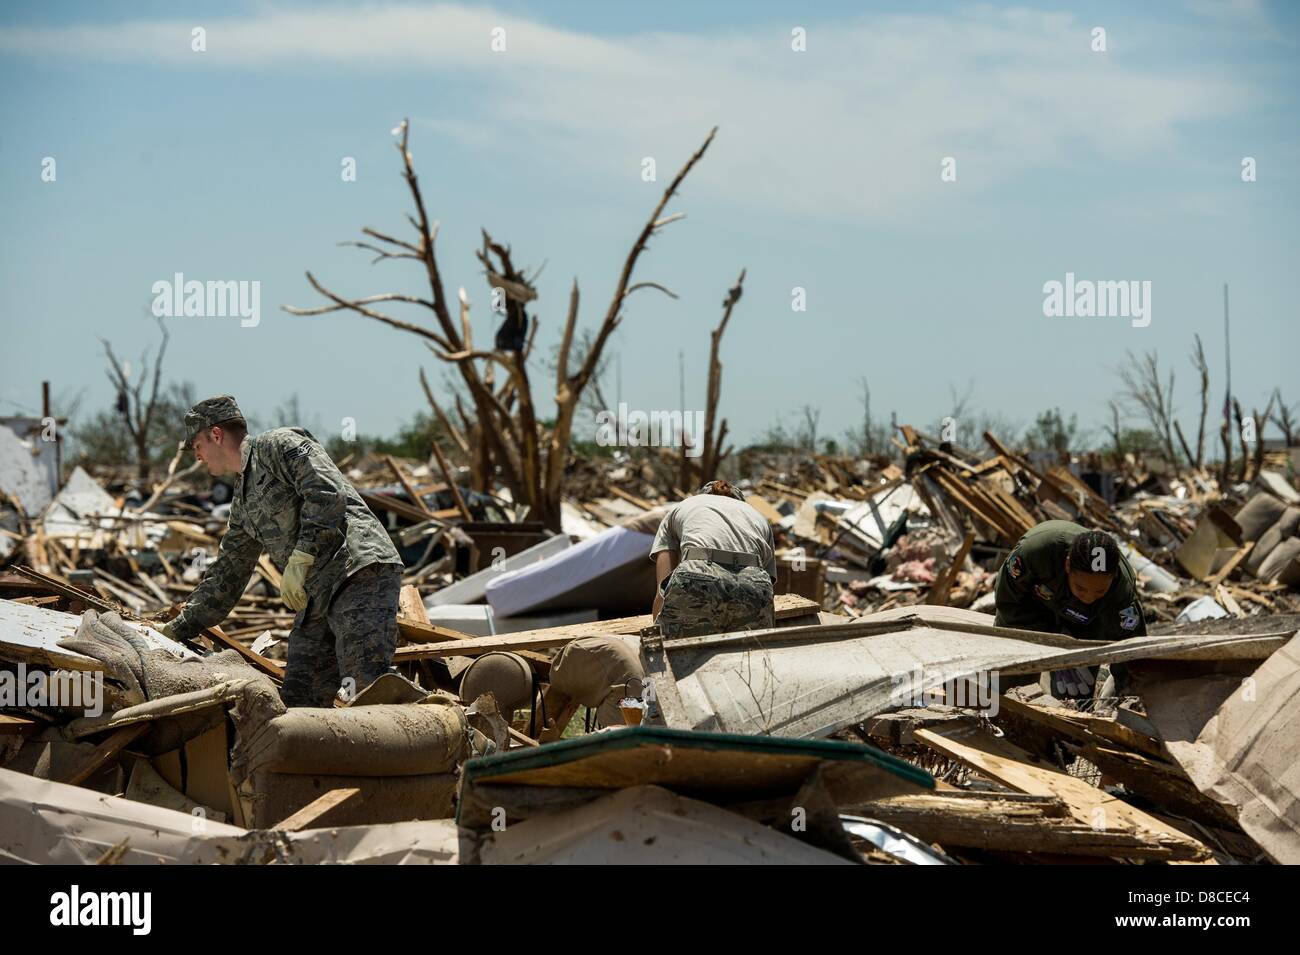 Les résidents au crible les décombres de leur maison à la suite d'une tornade EF-5 22 mai 2013 dans Moore, Oklahoma. La tempête avec des vents de plus de 200 miles par heure sur l'île de la banlieue d'Oklahoma City le 20 mai 2013, tuant au moins 24 personnes, en blessant plus de 230 et le déplacement de milliers. Banque D'Images